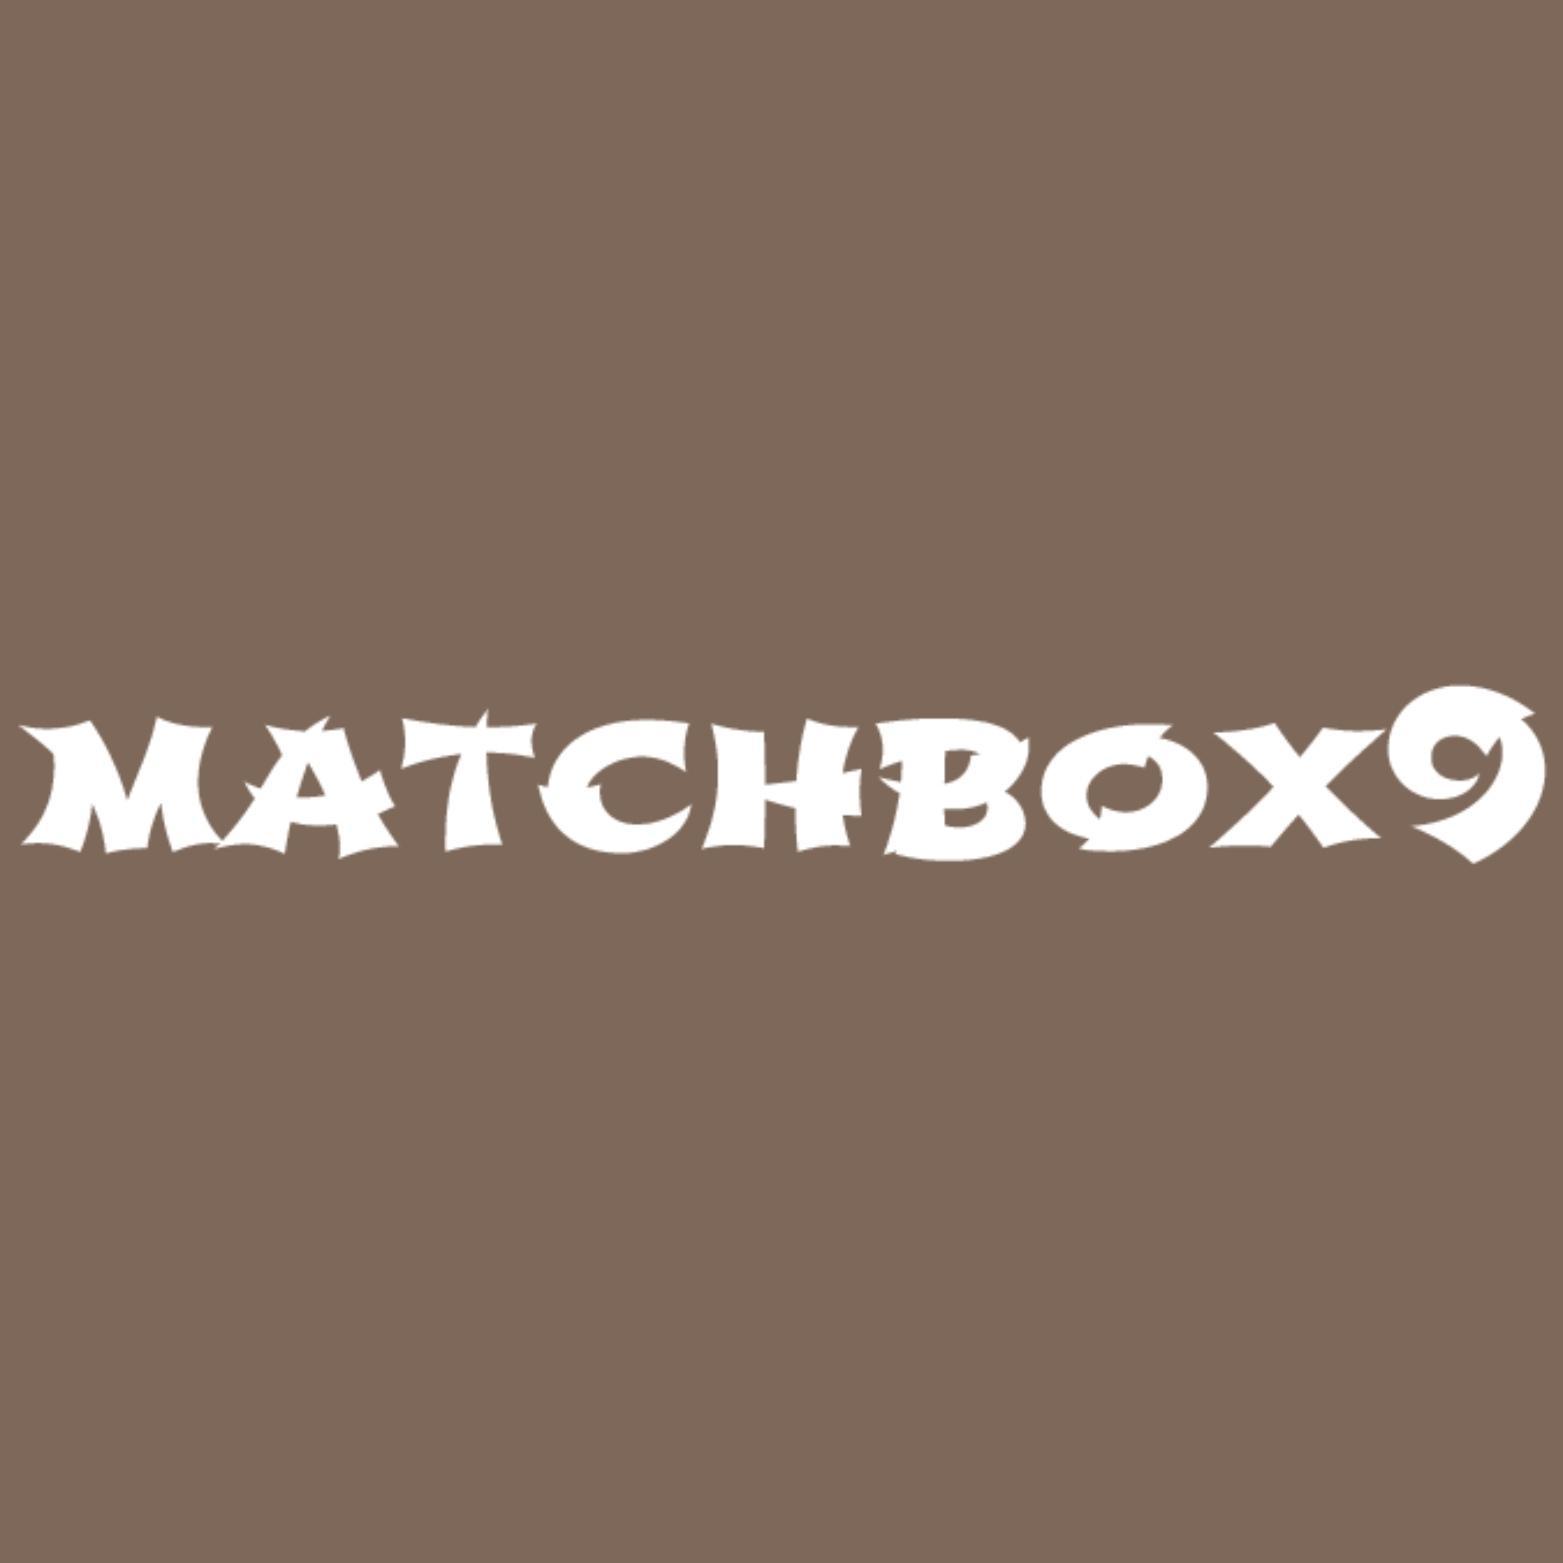 matchbox9